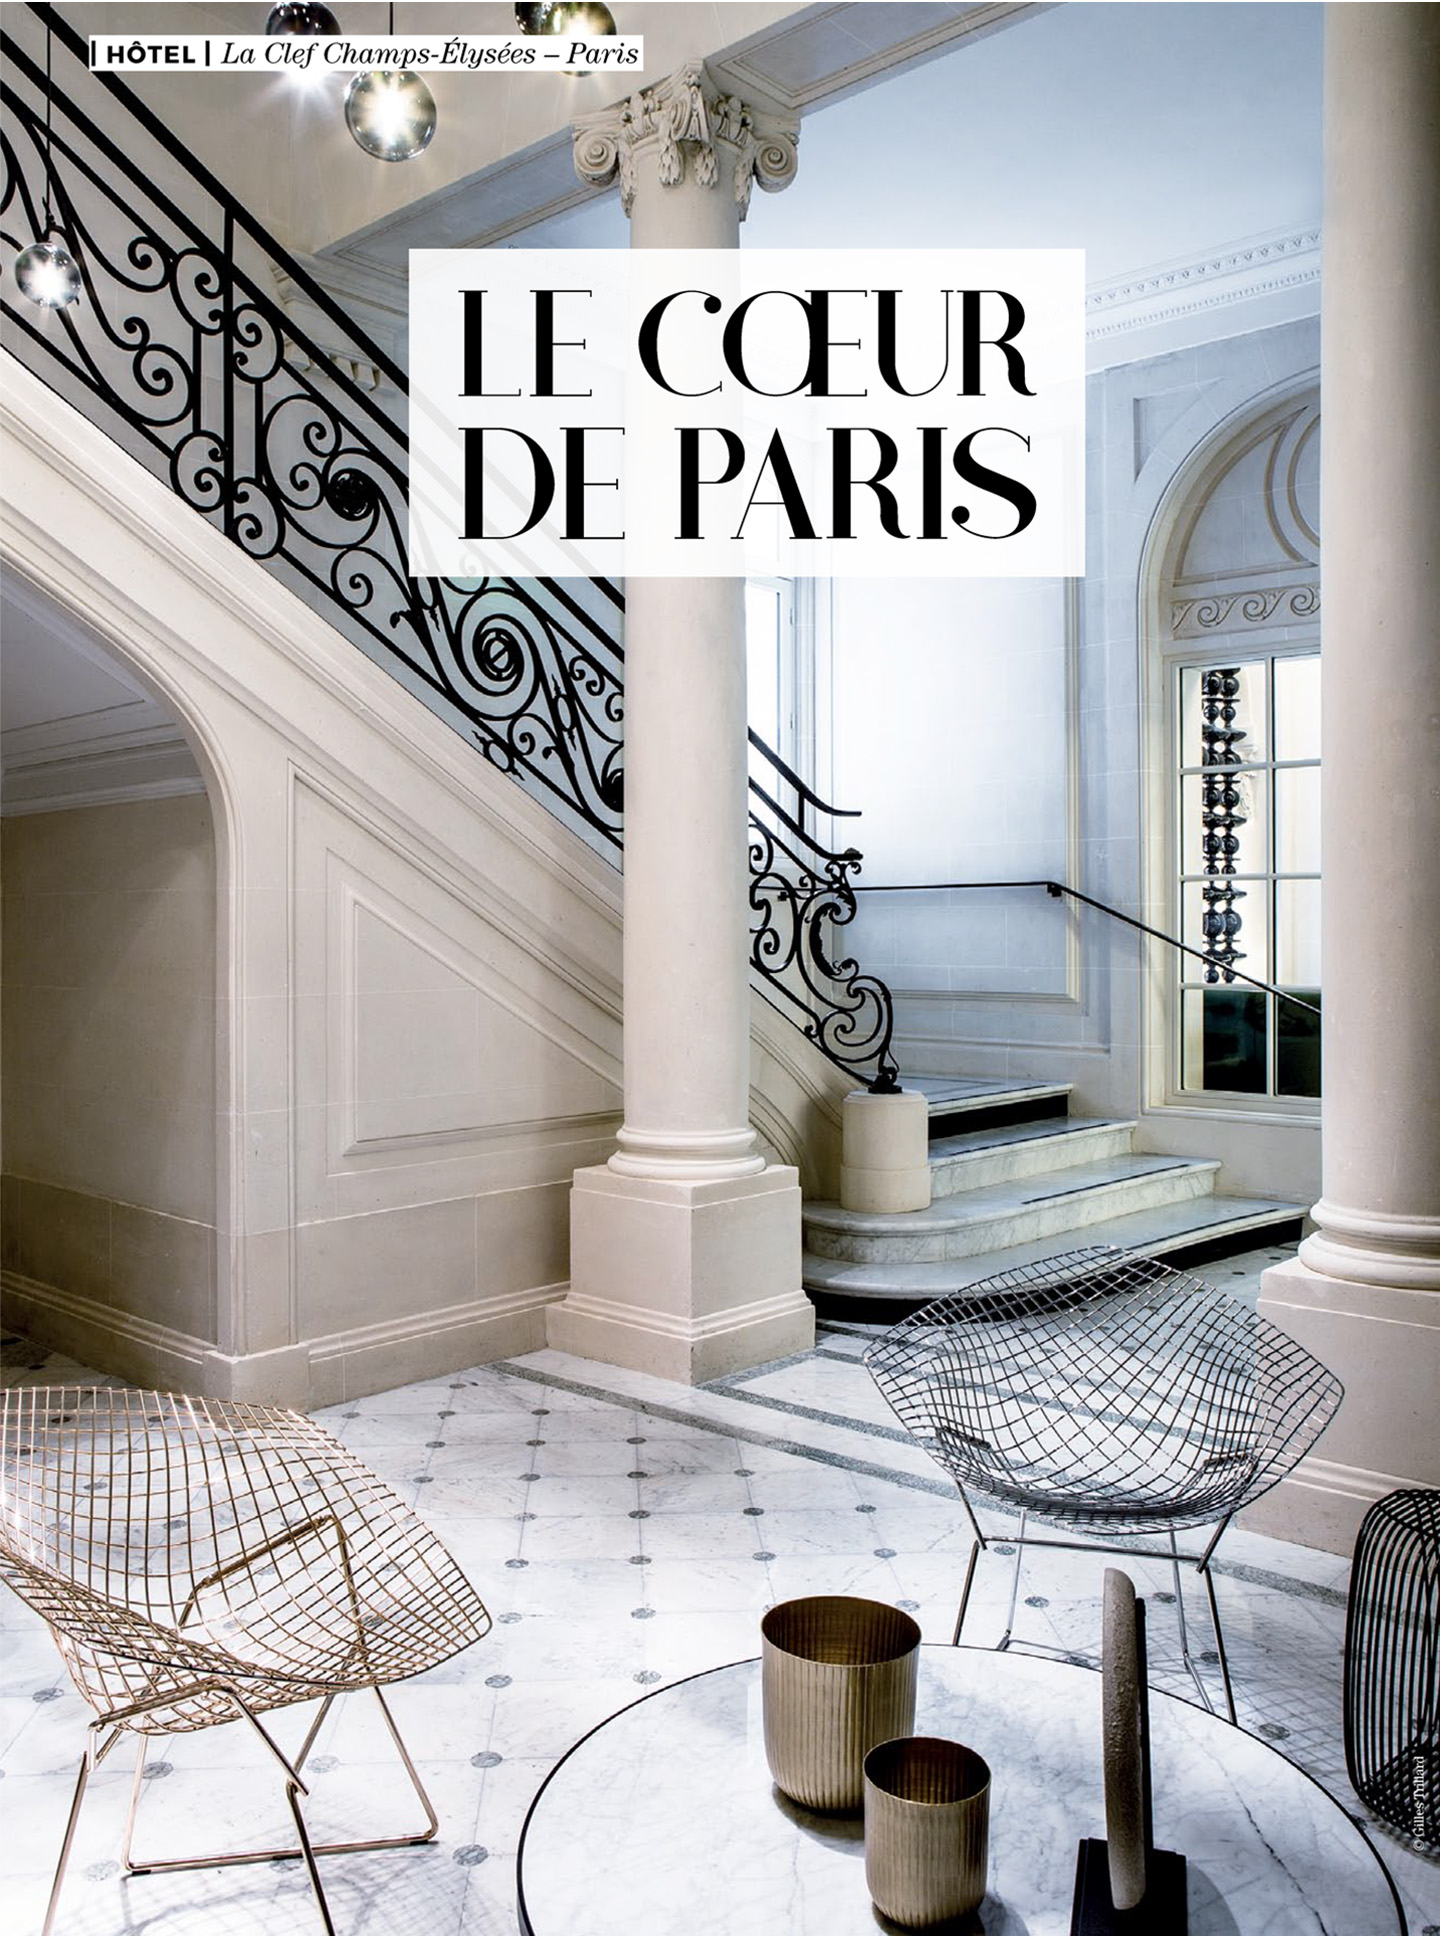 article on the 5 star parisian hotel La clef champs-elysées paris designed by the interior design studio jean-philippe nuel